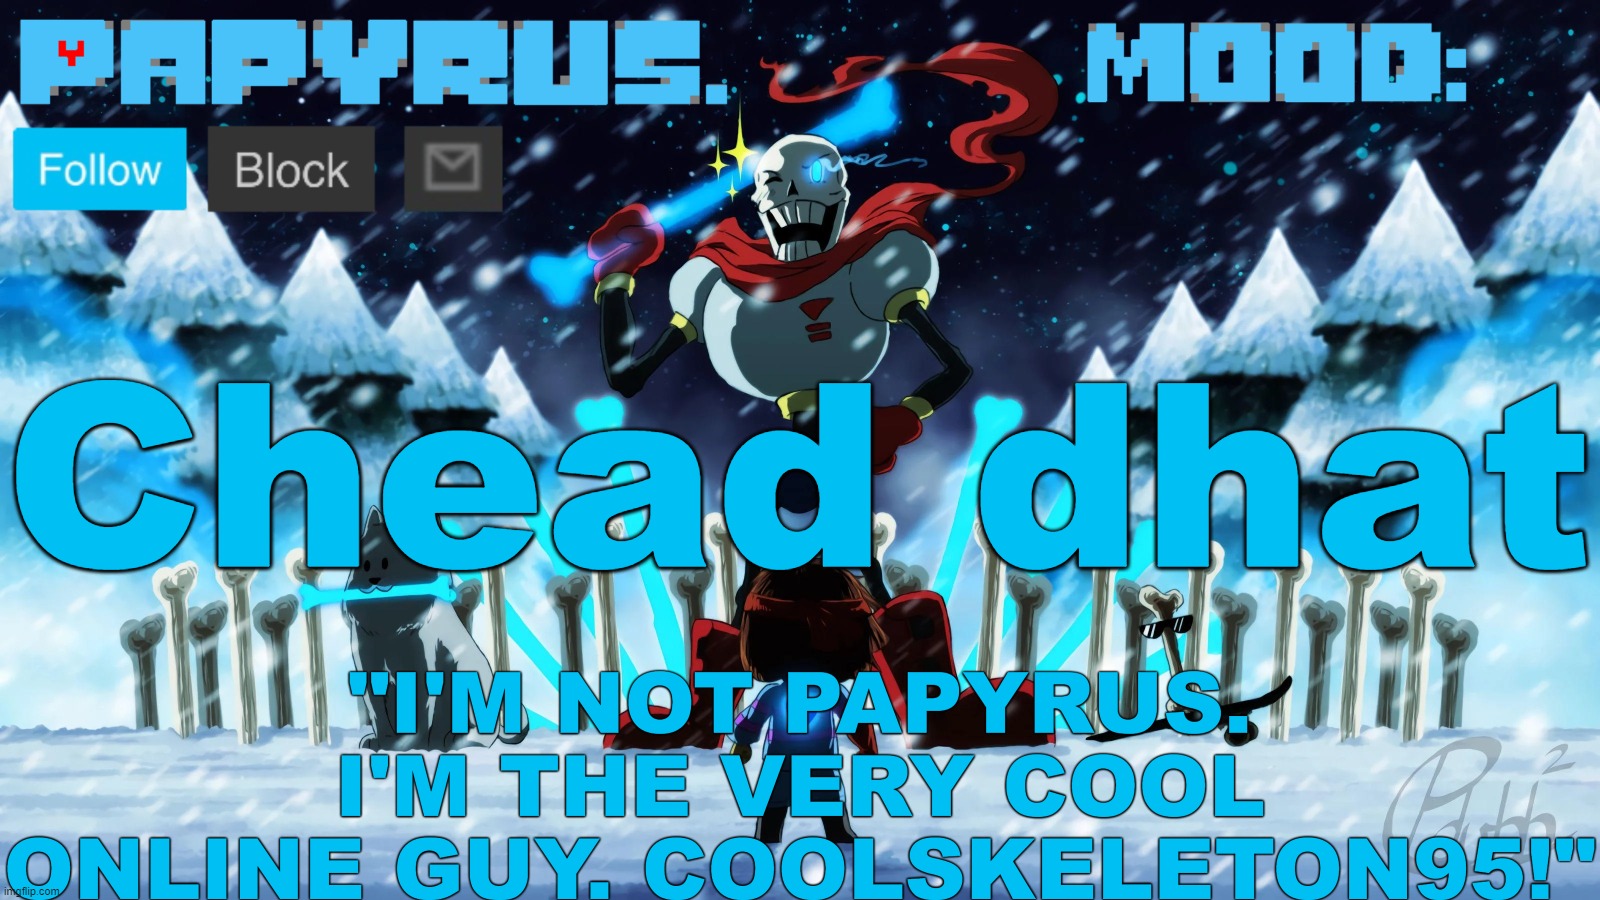 Papyrus announcement template | Chead dhat | image tagged in papyrus announcement template | made w/ Imgflip meme maker